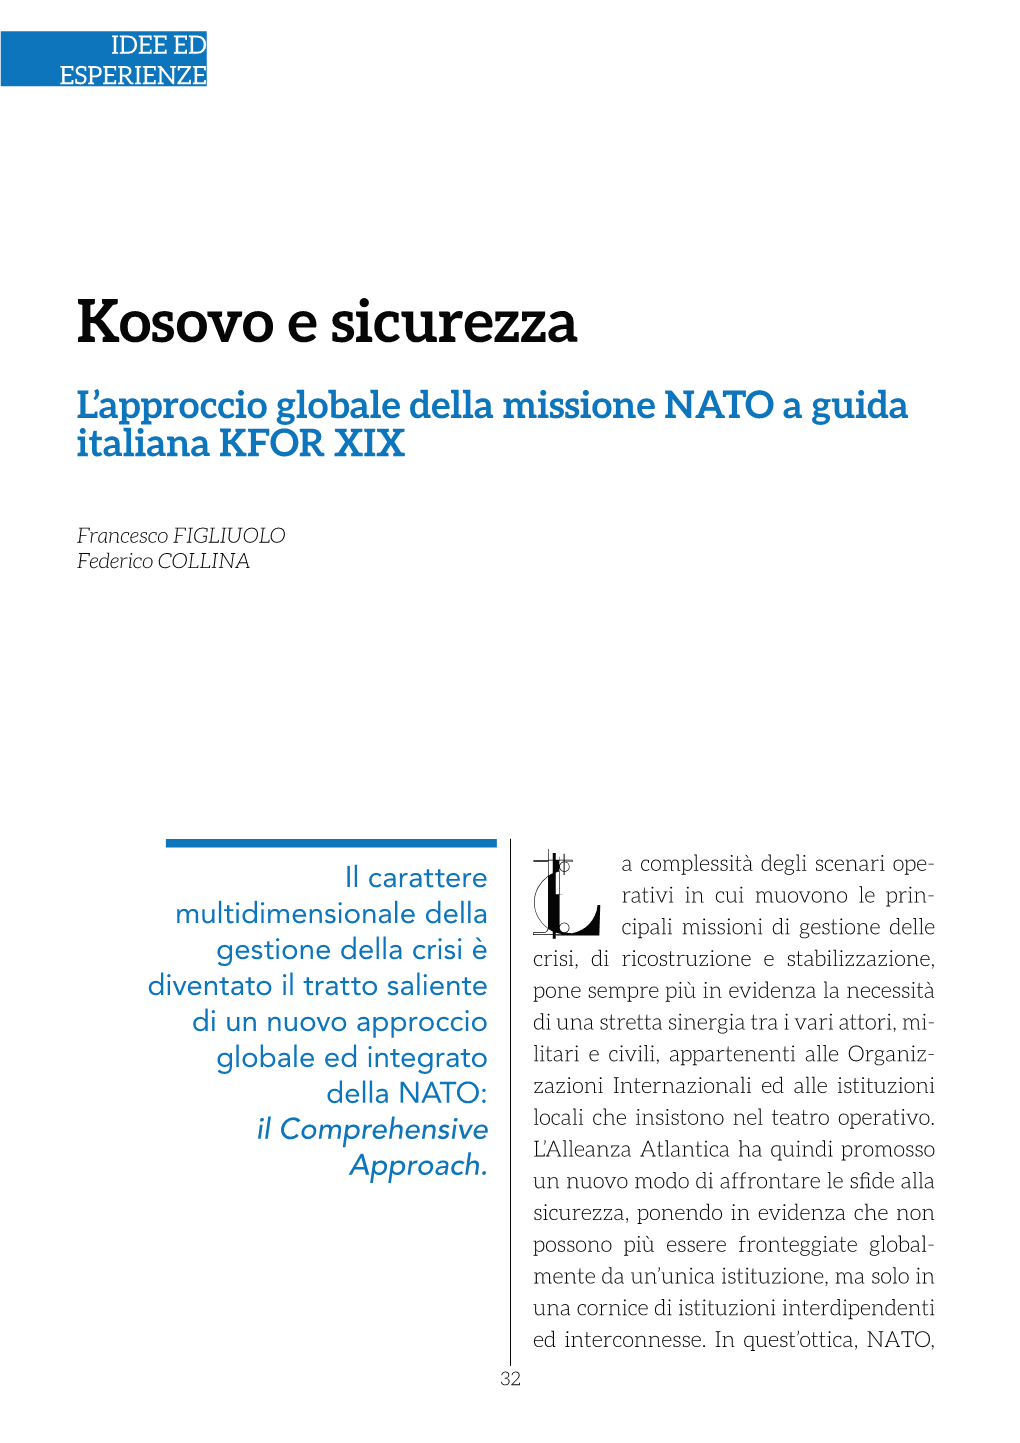 Kosovo E Sicurezza L’Approccio Globale Della Missione NATO a Guida Italiana KFOR XIX